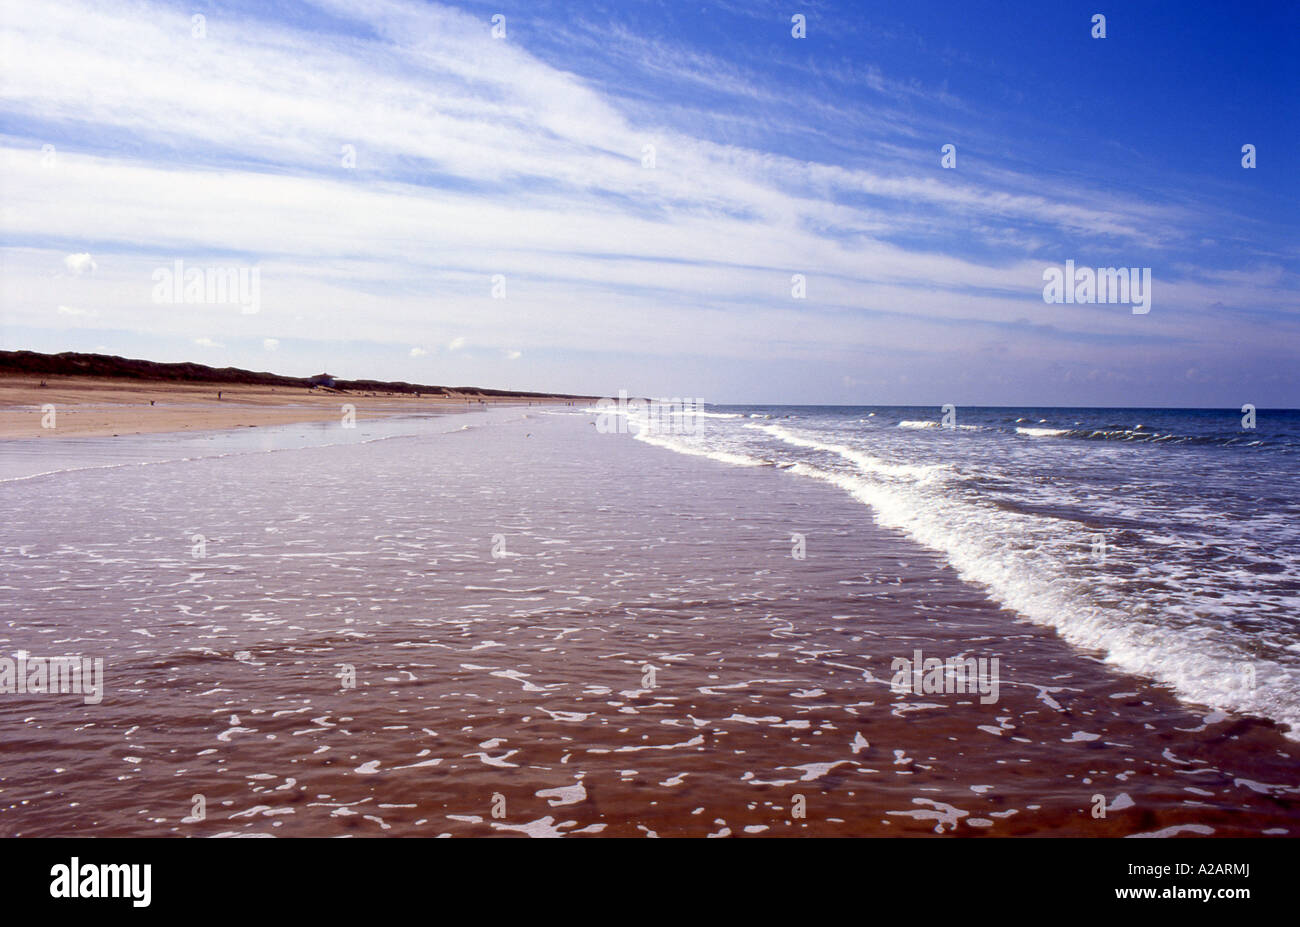 Large plage ouverte à l'égard de brem sur mer à bretignolles sur mer vendee france nombre 2396 Banque D'Images